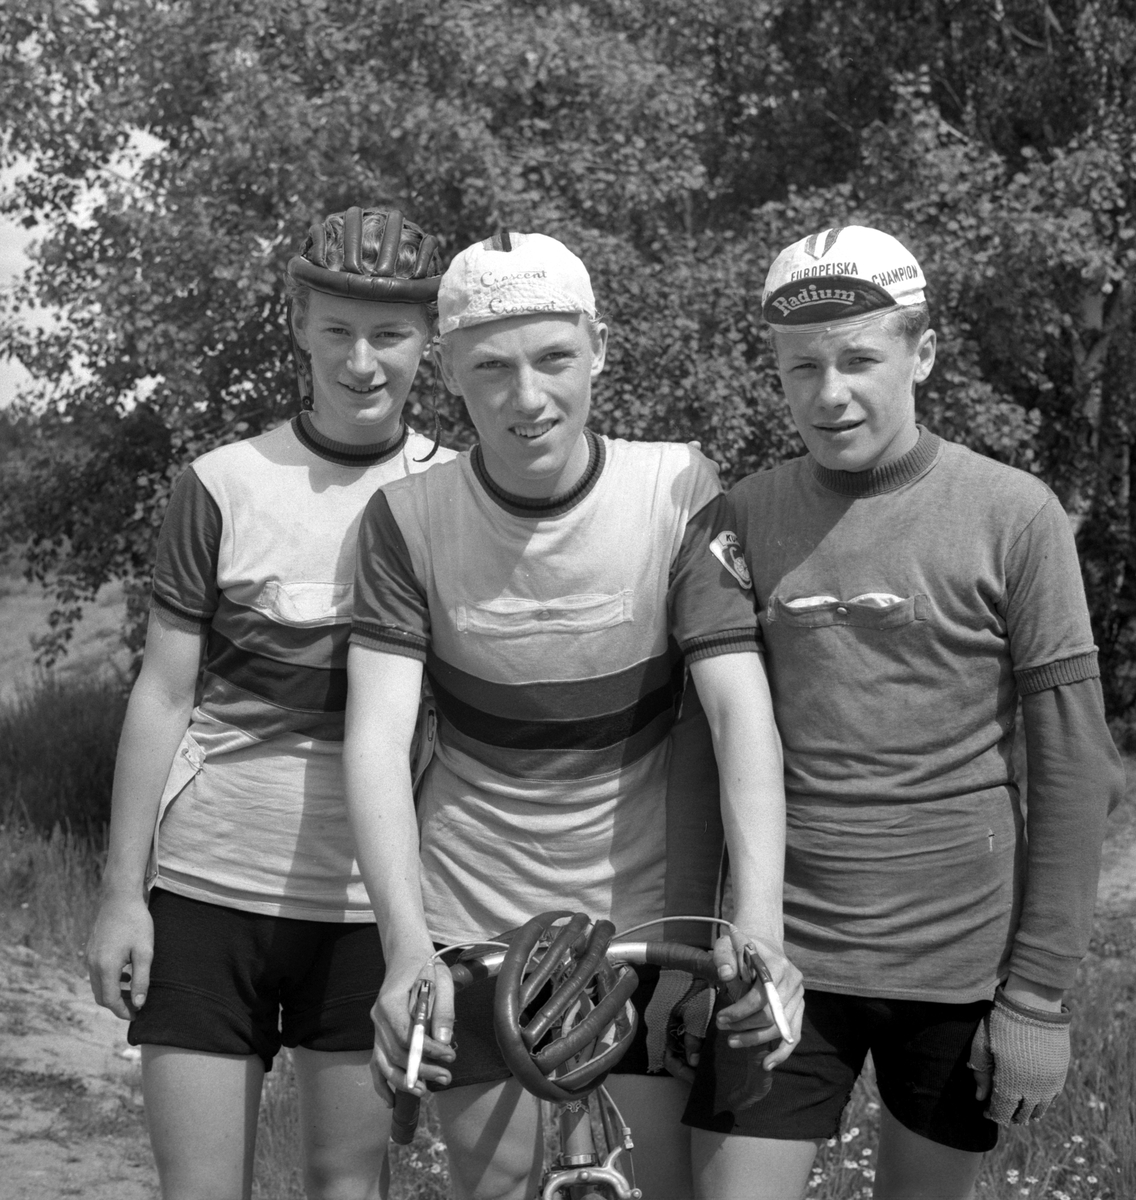 Cykeltävling. 
15 juni 1959.